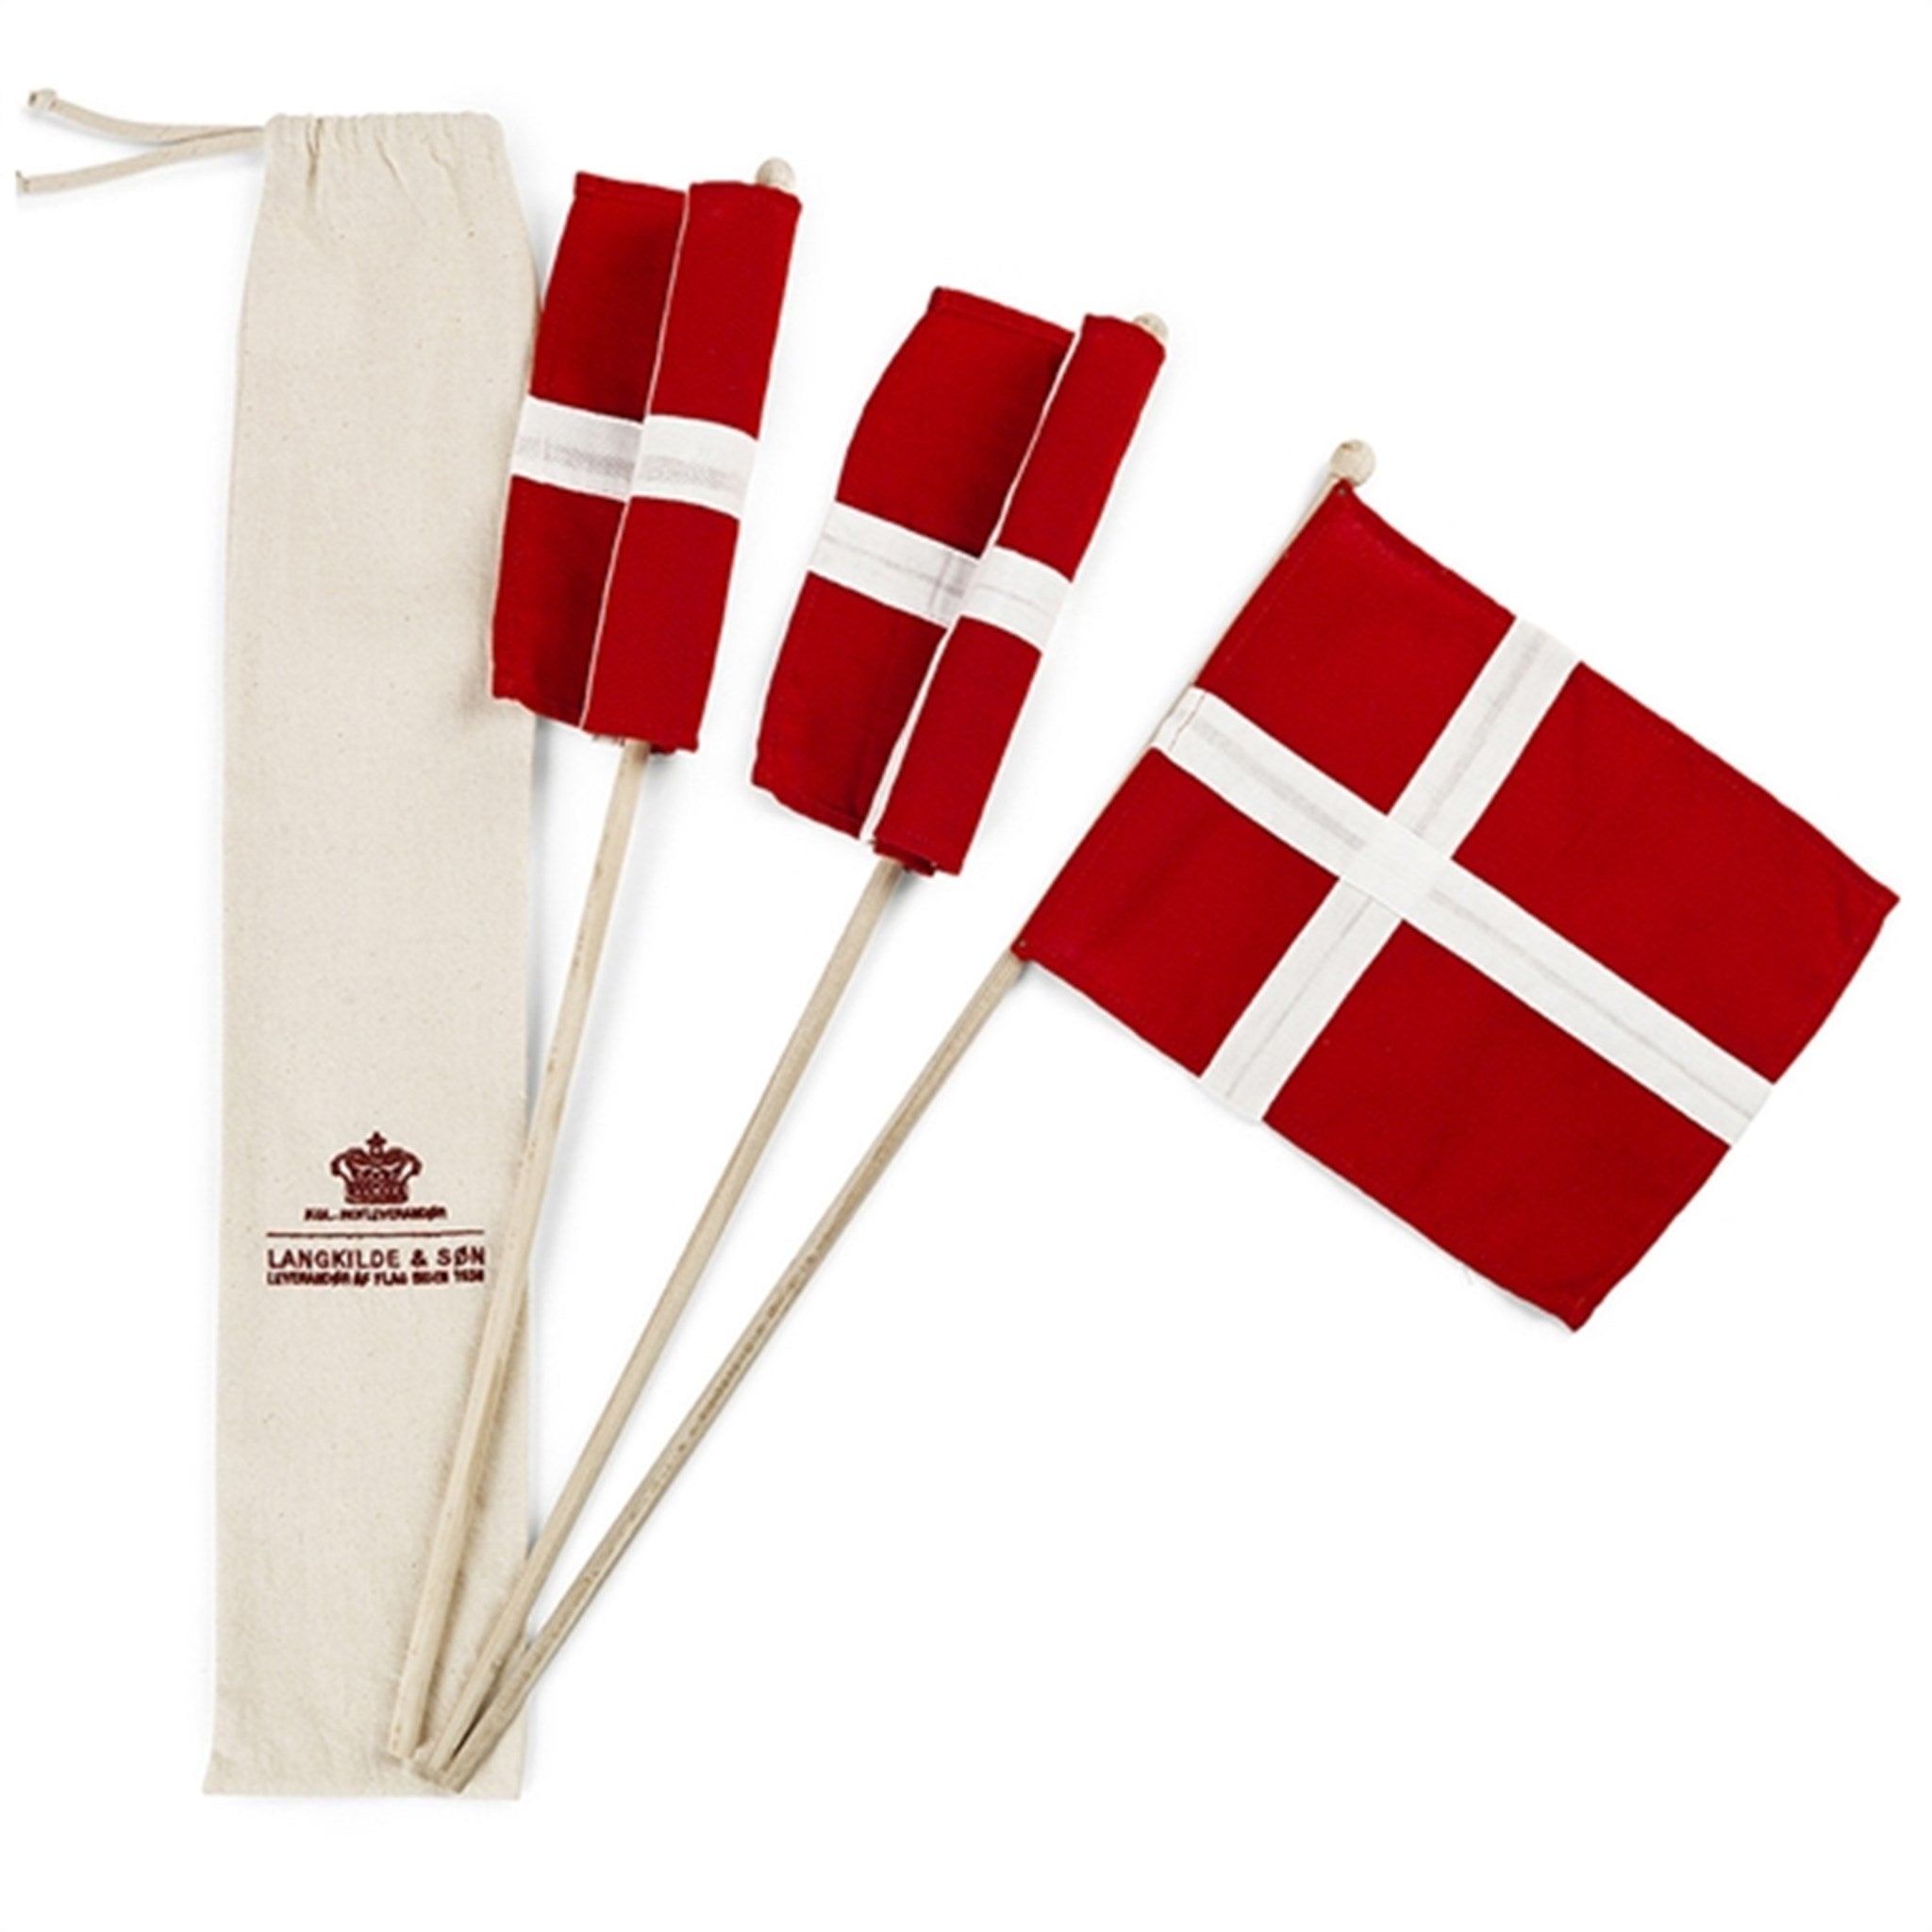 Langkilde & Søn Flag på Pind 3 stk